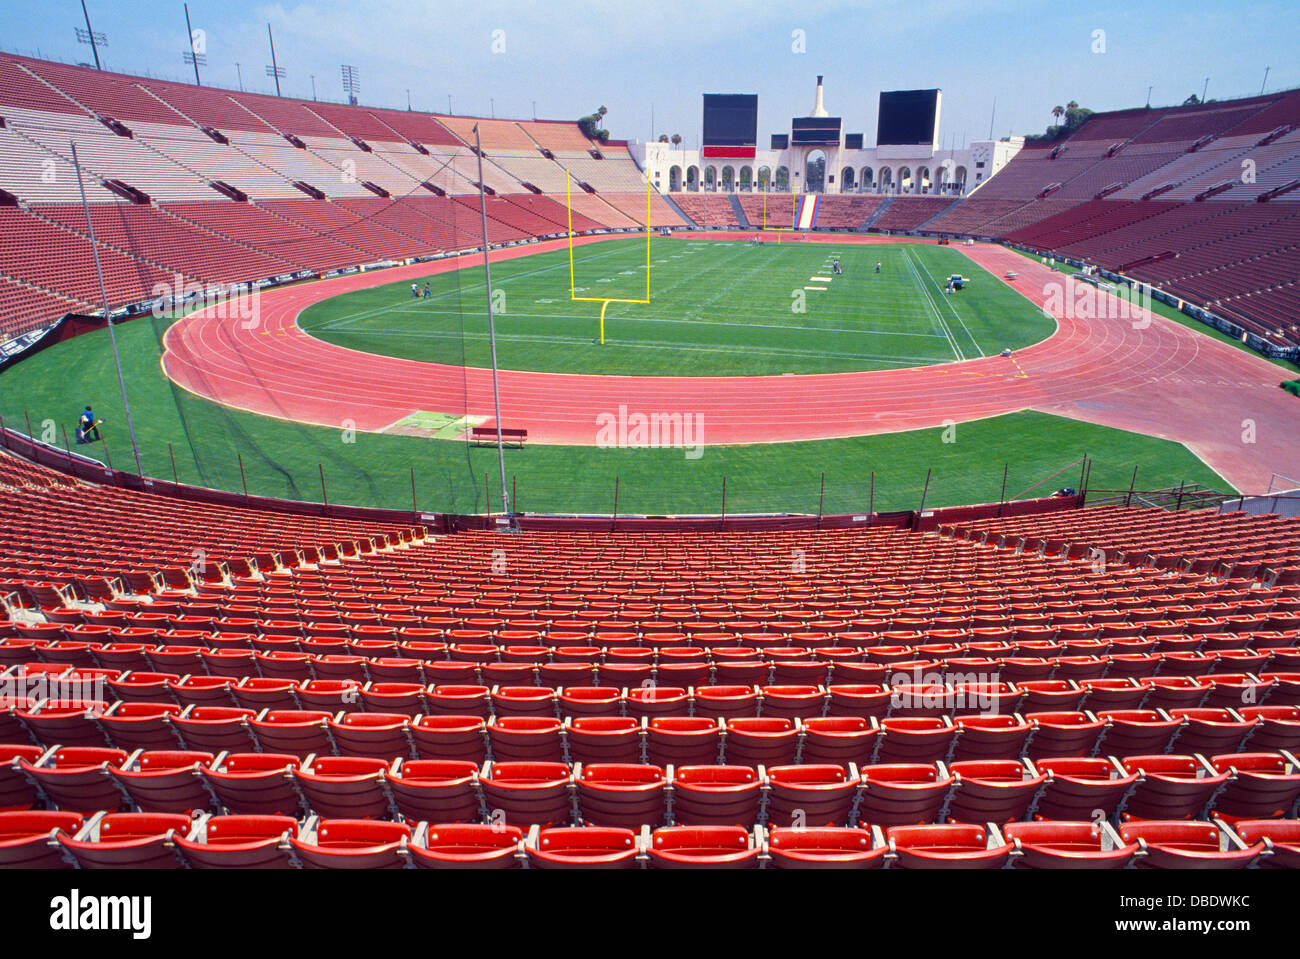 Das Los Angeles Memorial Coliseum in Los Angeles, Kalifornien, USA, zweimal Gastgeber der Olympischen Spiele und ist Heimat des USC College Football Teams. Stockfoto